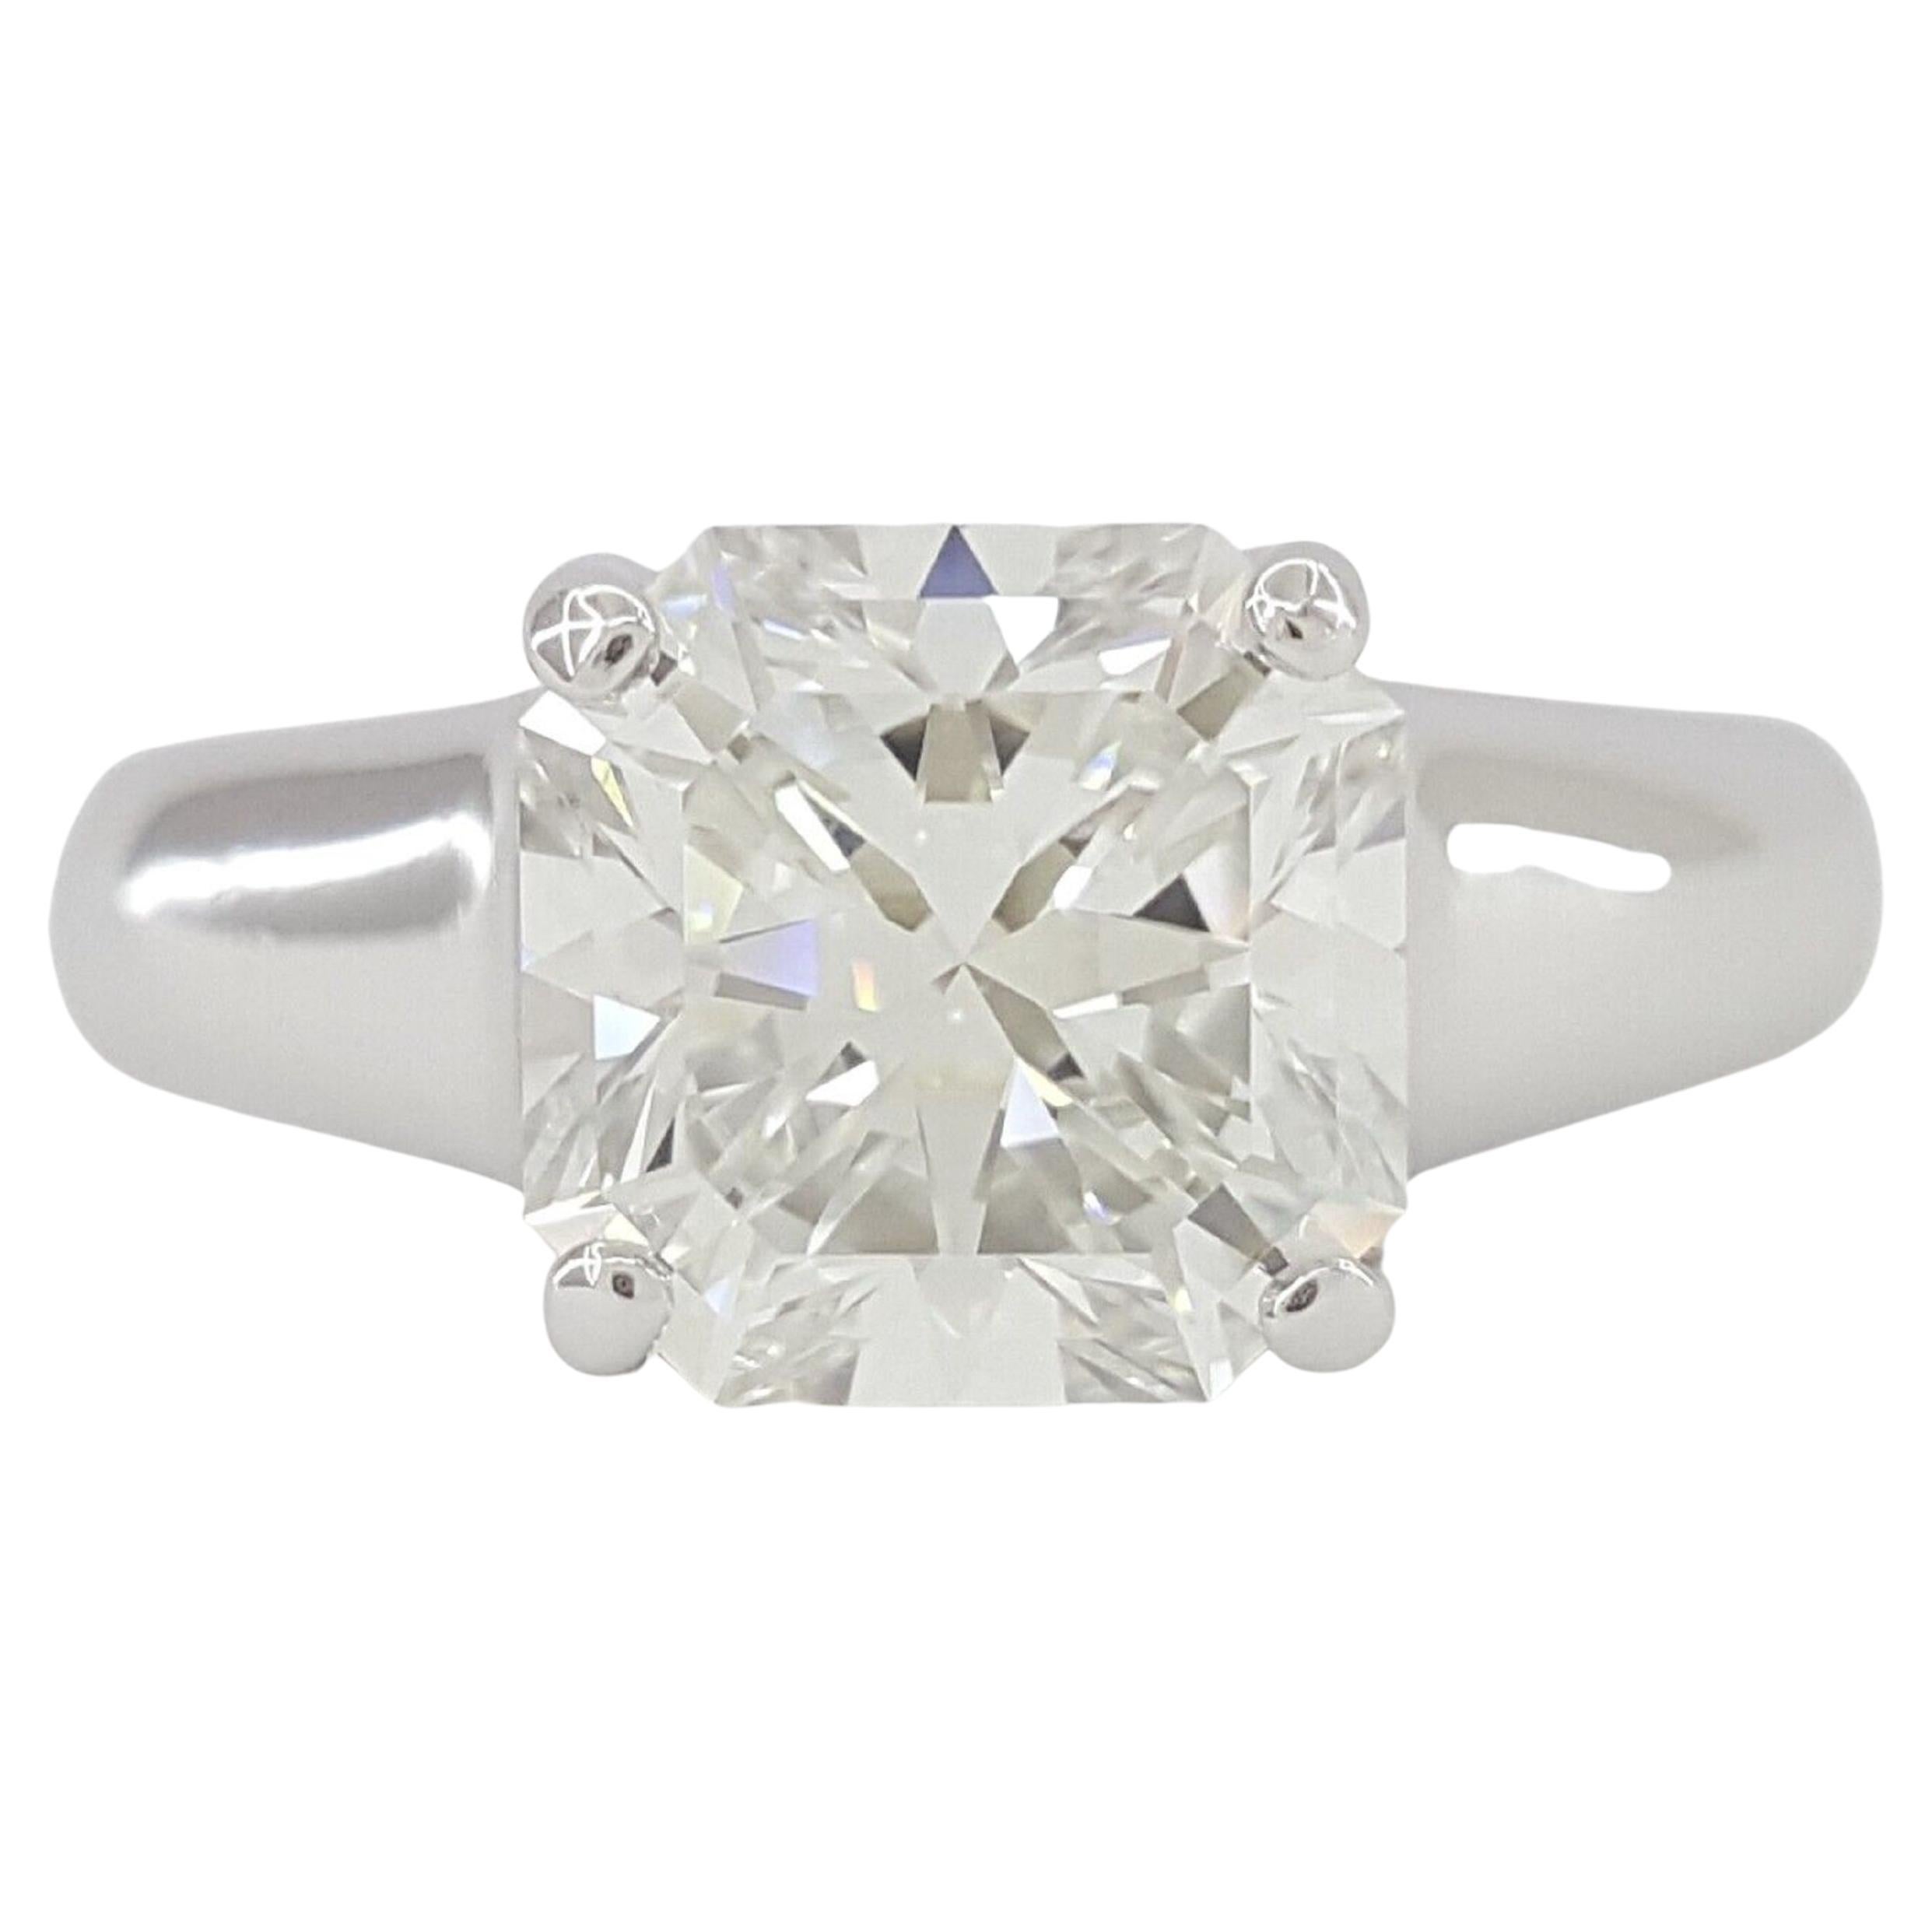 Tiffany & Co. 2.16 carat Platinum Lucida Square Brilliant Cut Diamond Solitaire Engagement Ring. 


